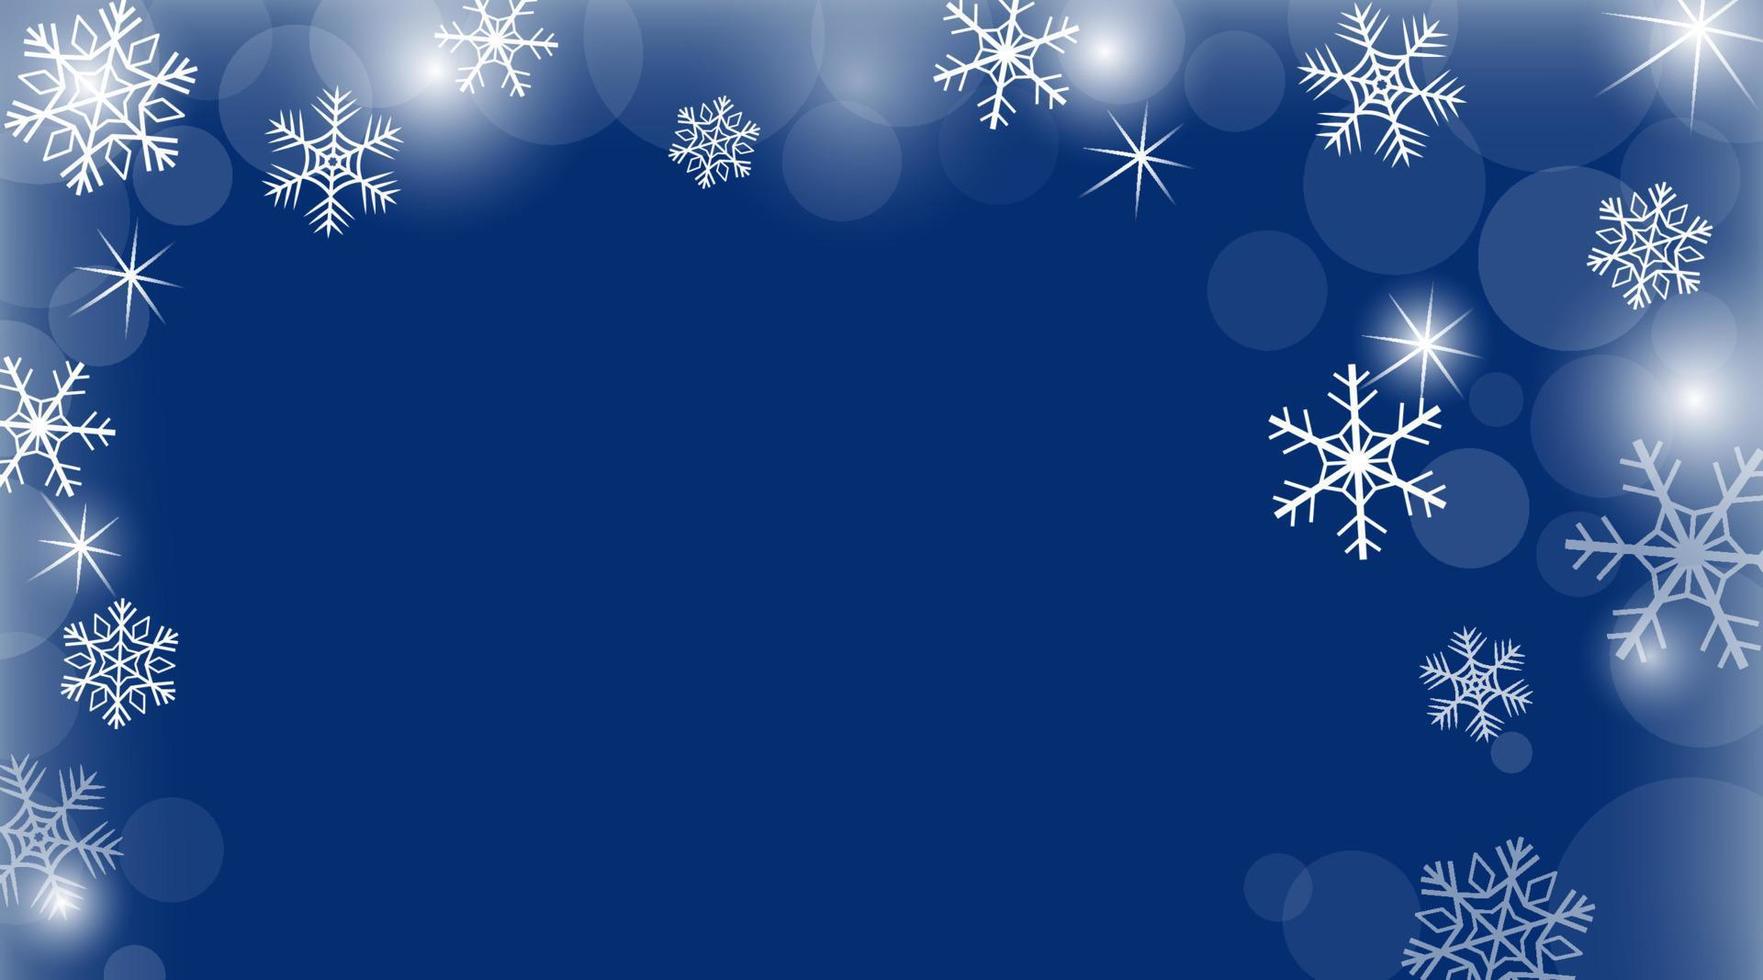 vektor vinter- baner med blå bakgrund och lysande stjärnor och snöflingor. jul och ny år bakgrund för design.